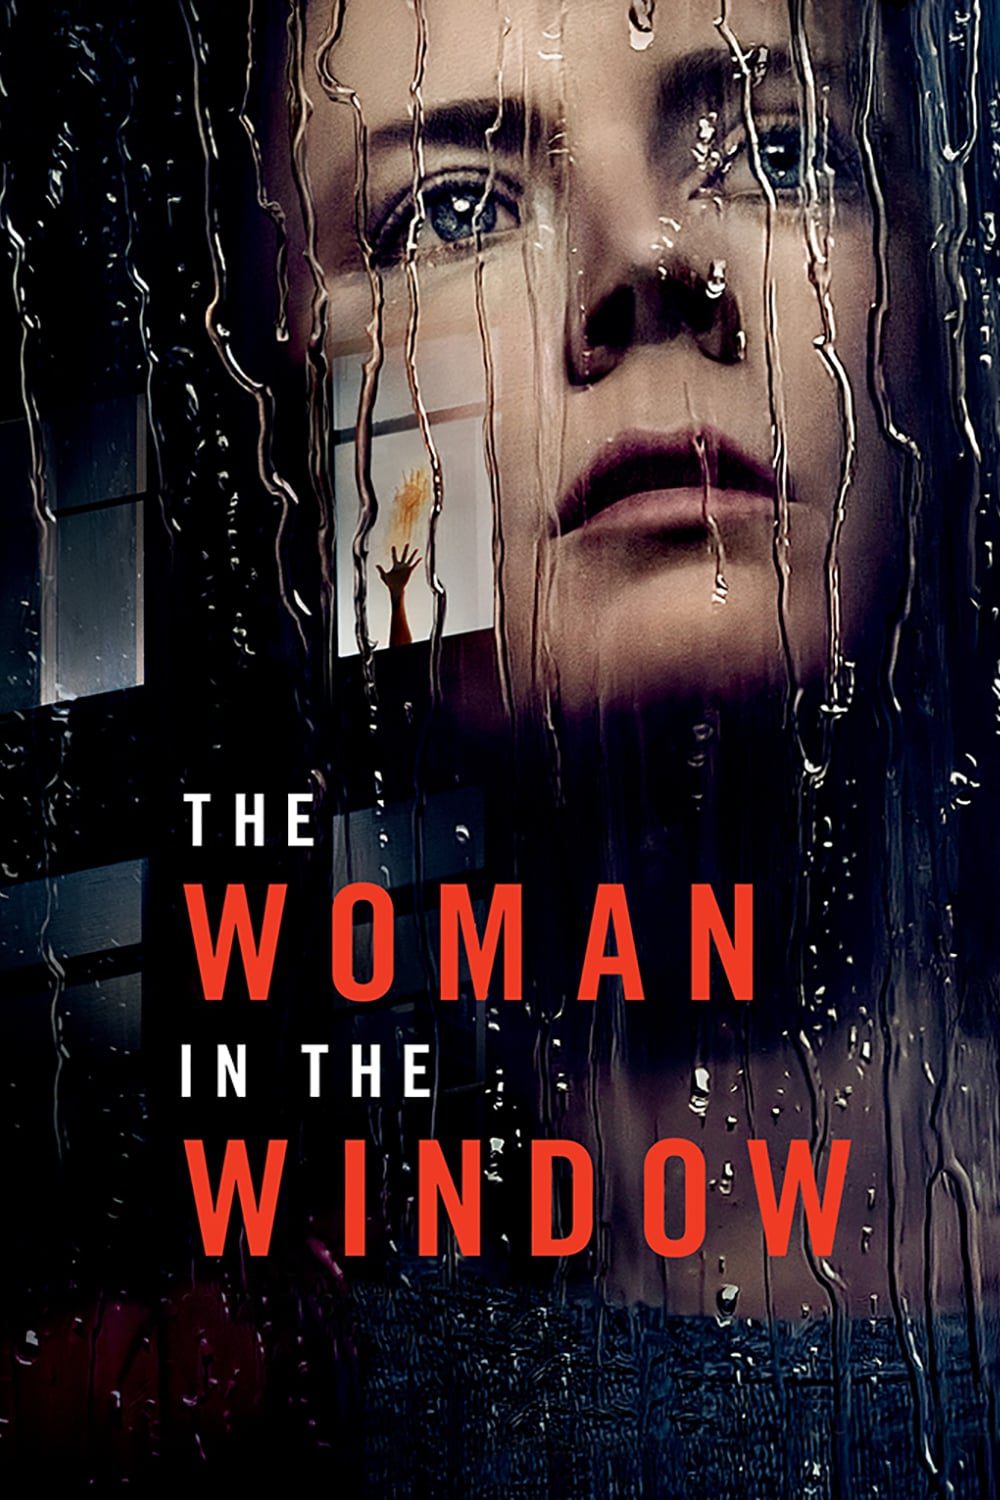 ดูหนังออนไลน์ฟรี The Woman in the Window ส่องปมมรณะ